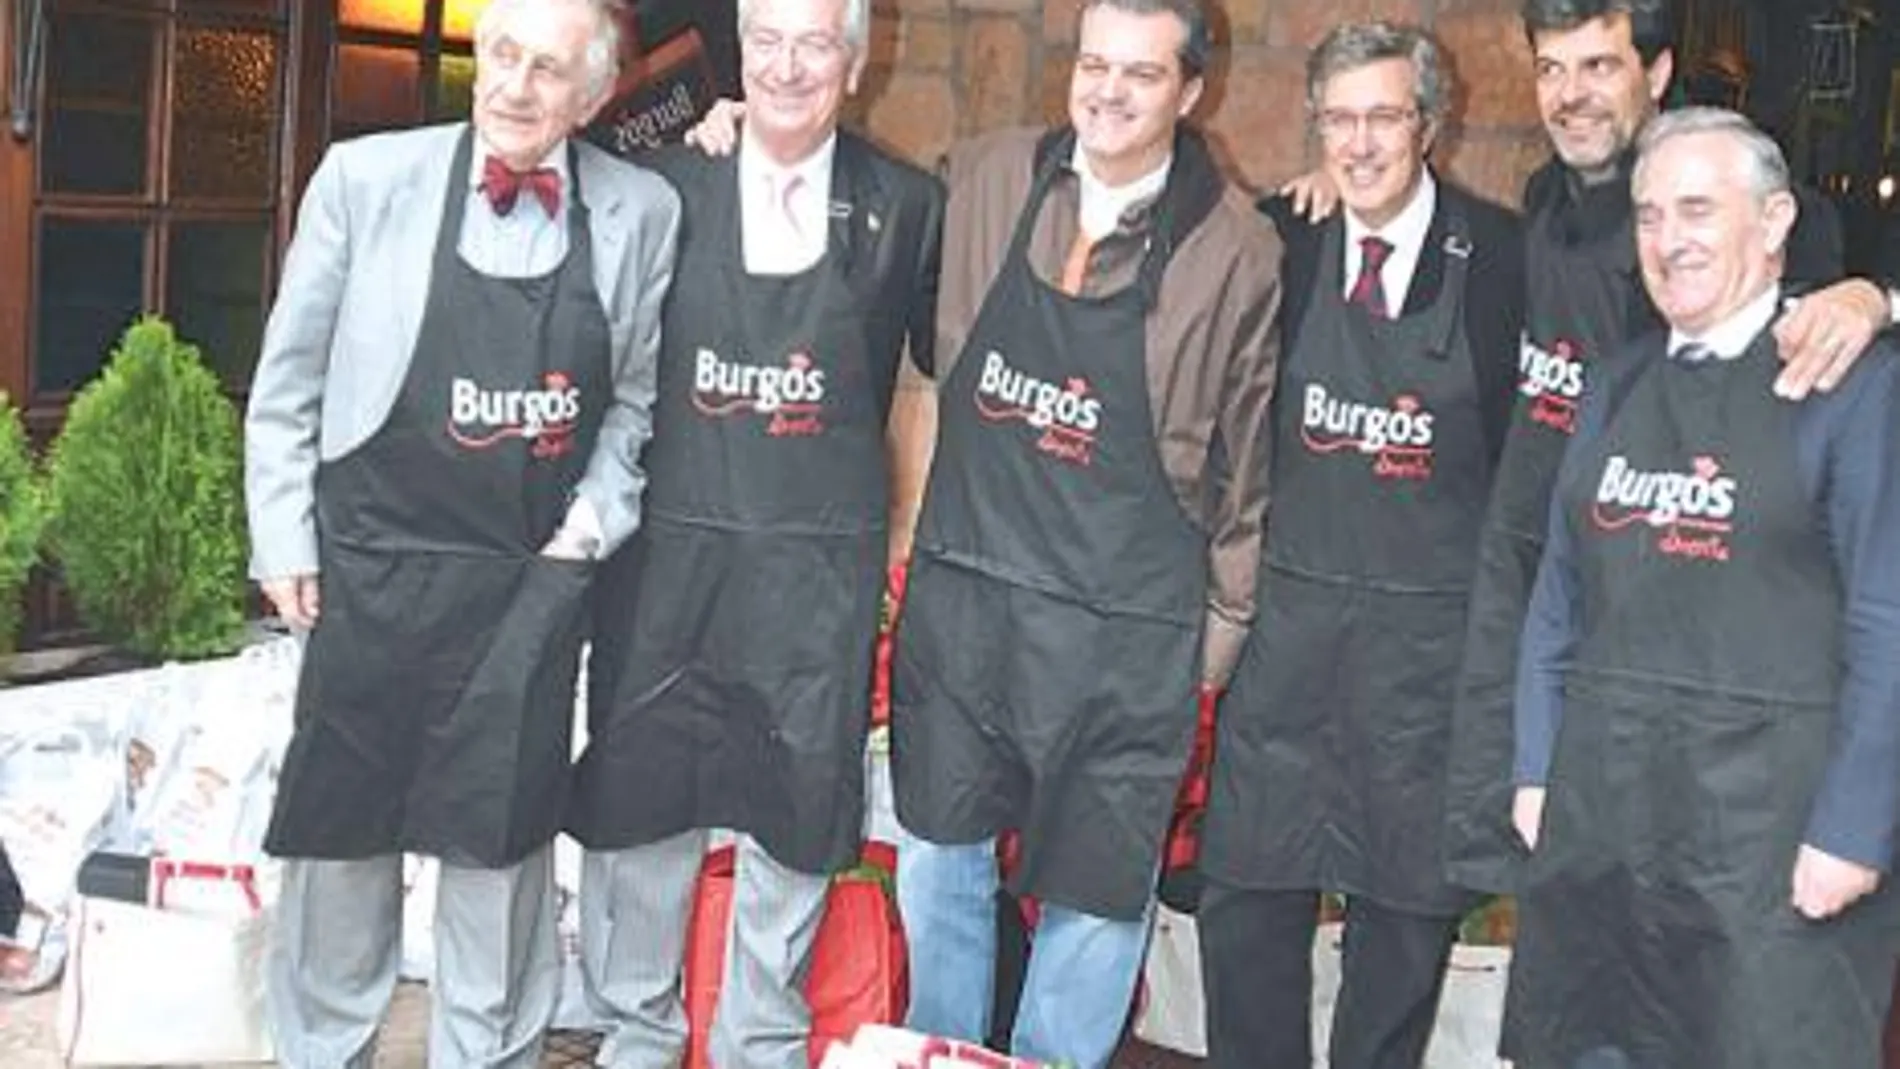 Los alimentos de Burgos conquistan Madrid